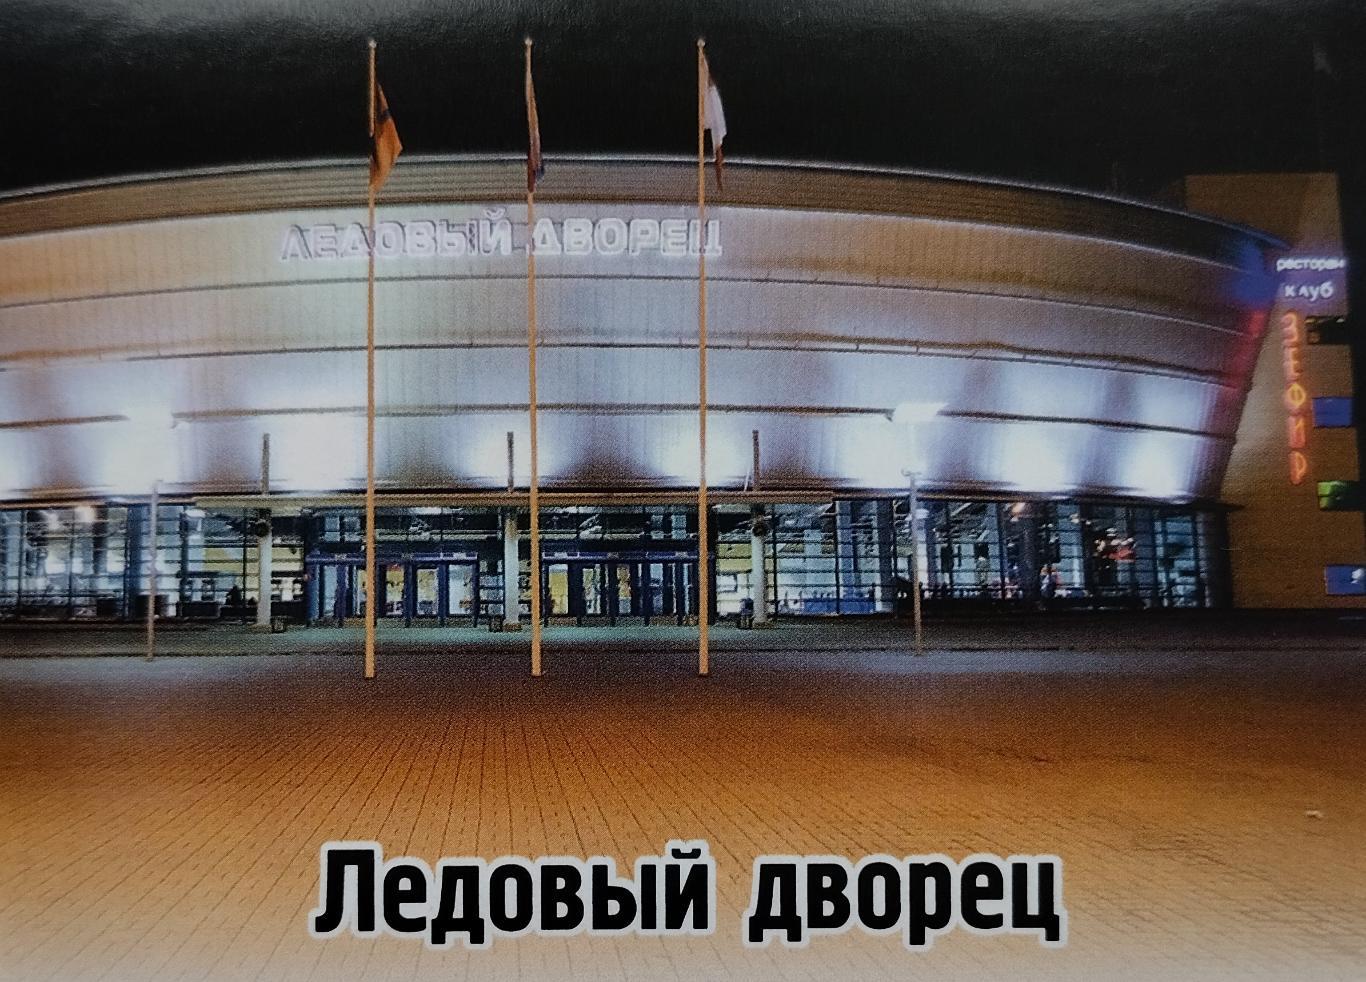 Наклейка. SeReal КХЛ 2012/2013. №235. Ледовый дворец. Северсталь Череповец.